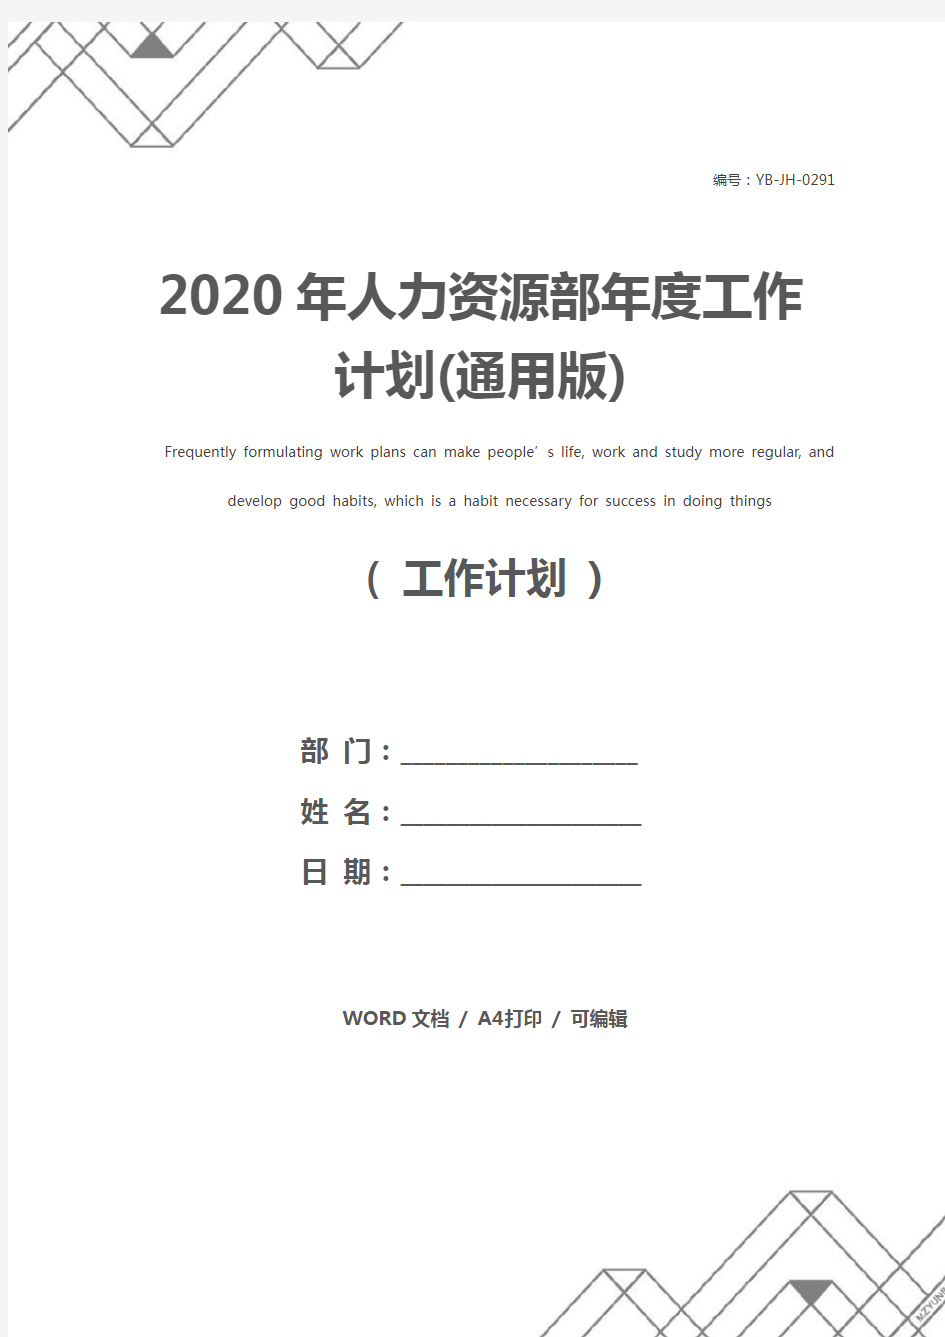 2020年人力资源部年度工作计划(通用版)